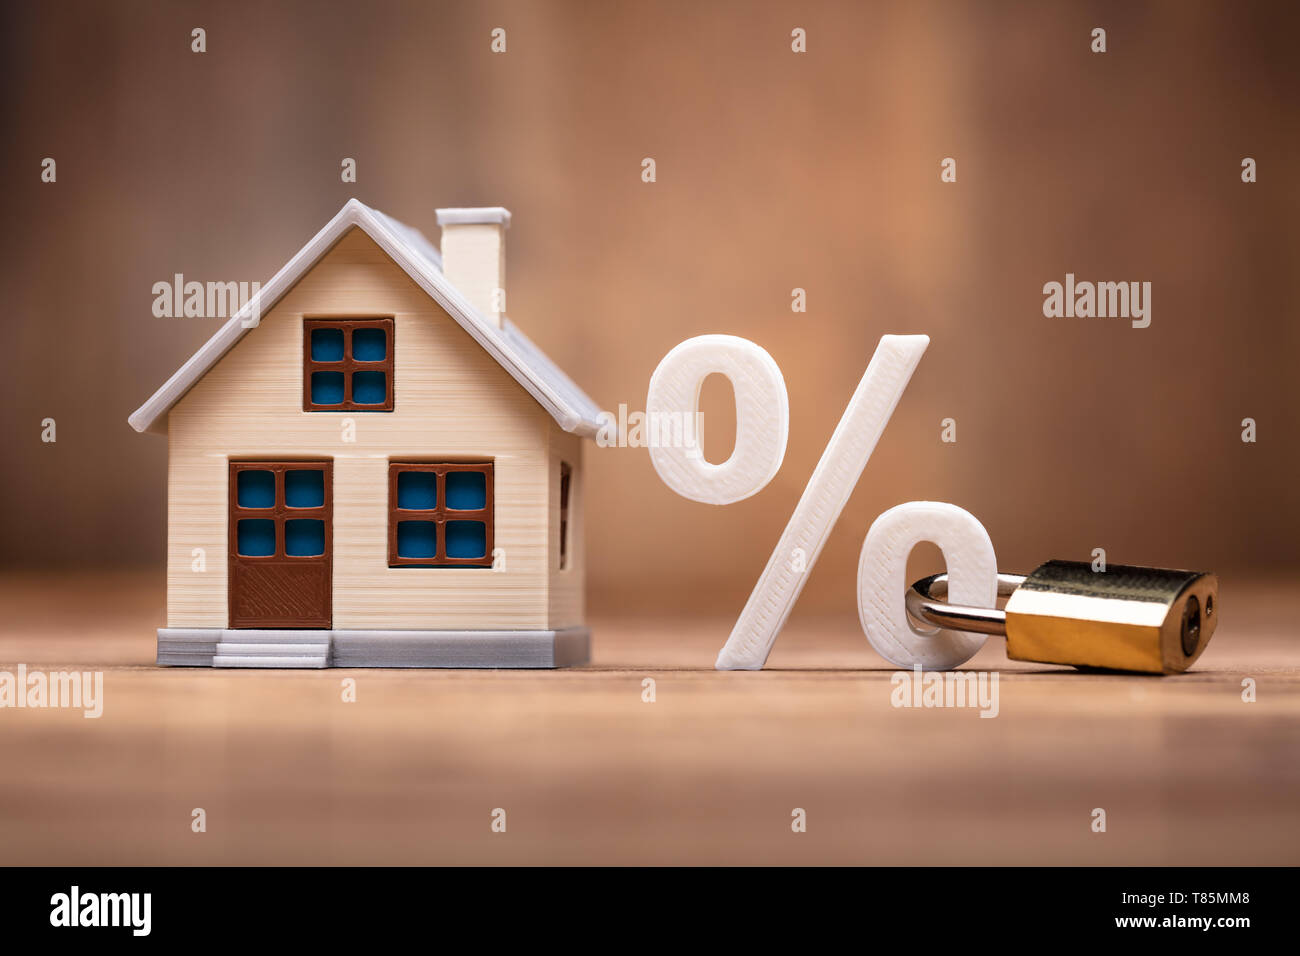 Modello di casa vicino al segno di percentuale con il blocco della tastiera sulla scrivania in legno Foto Stock